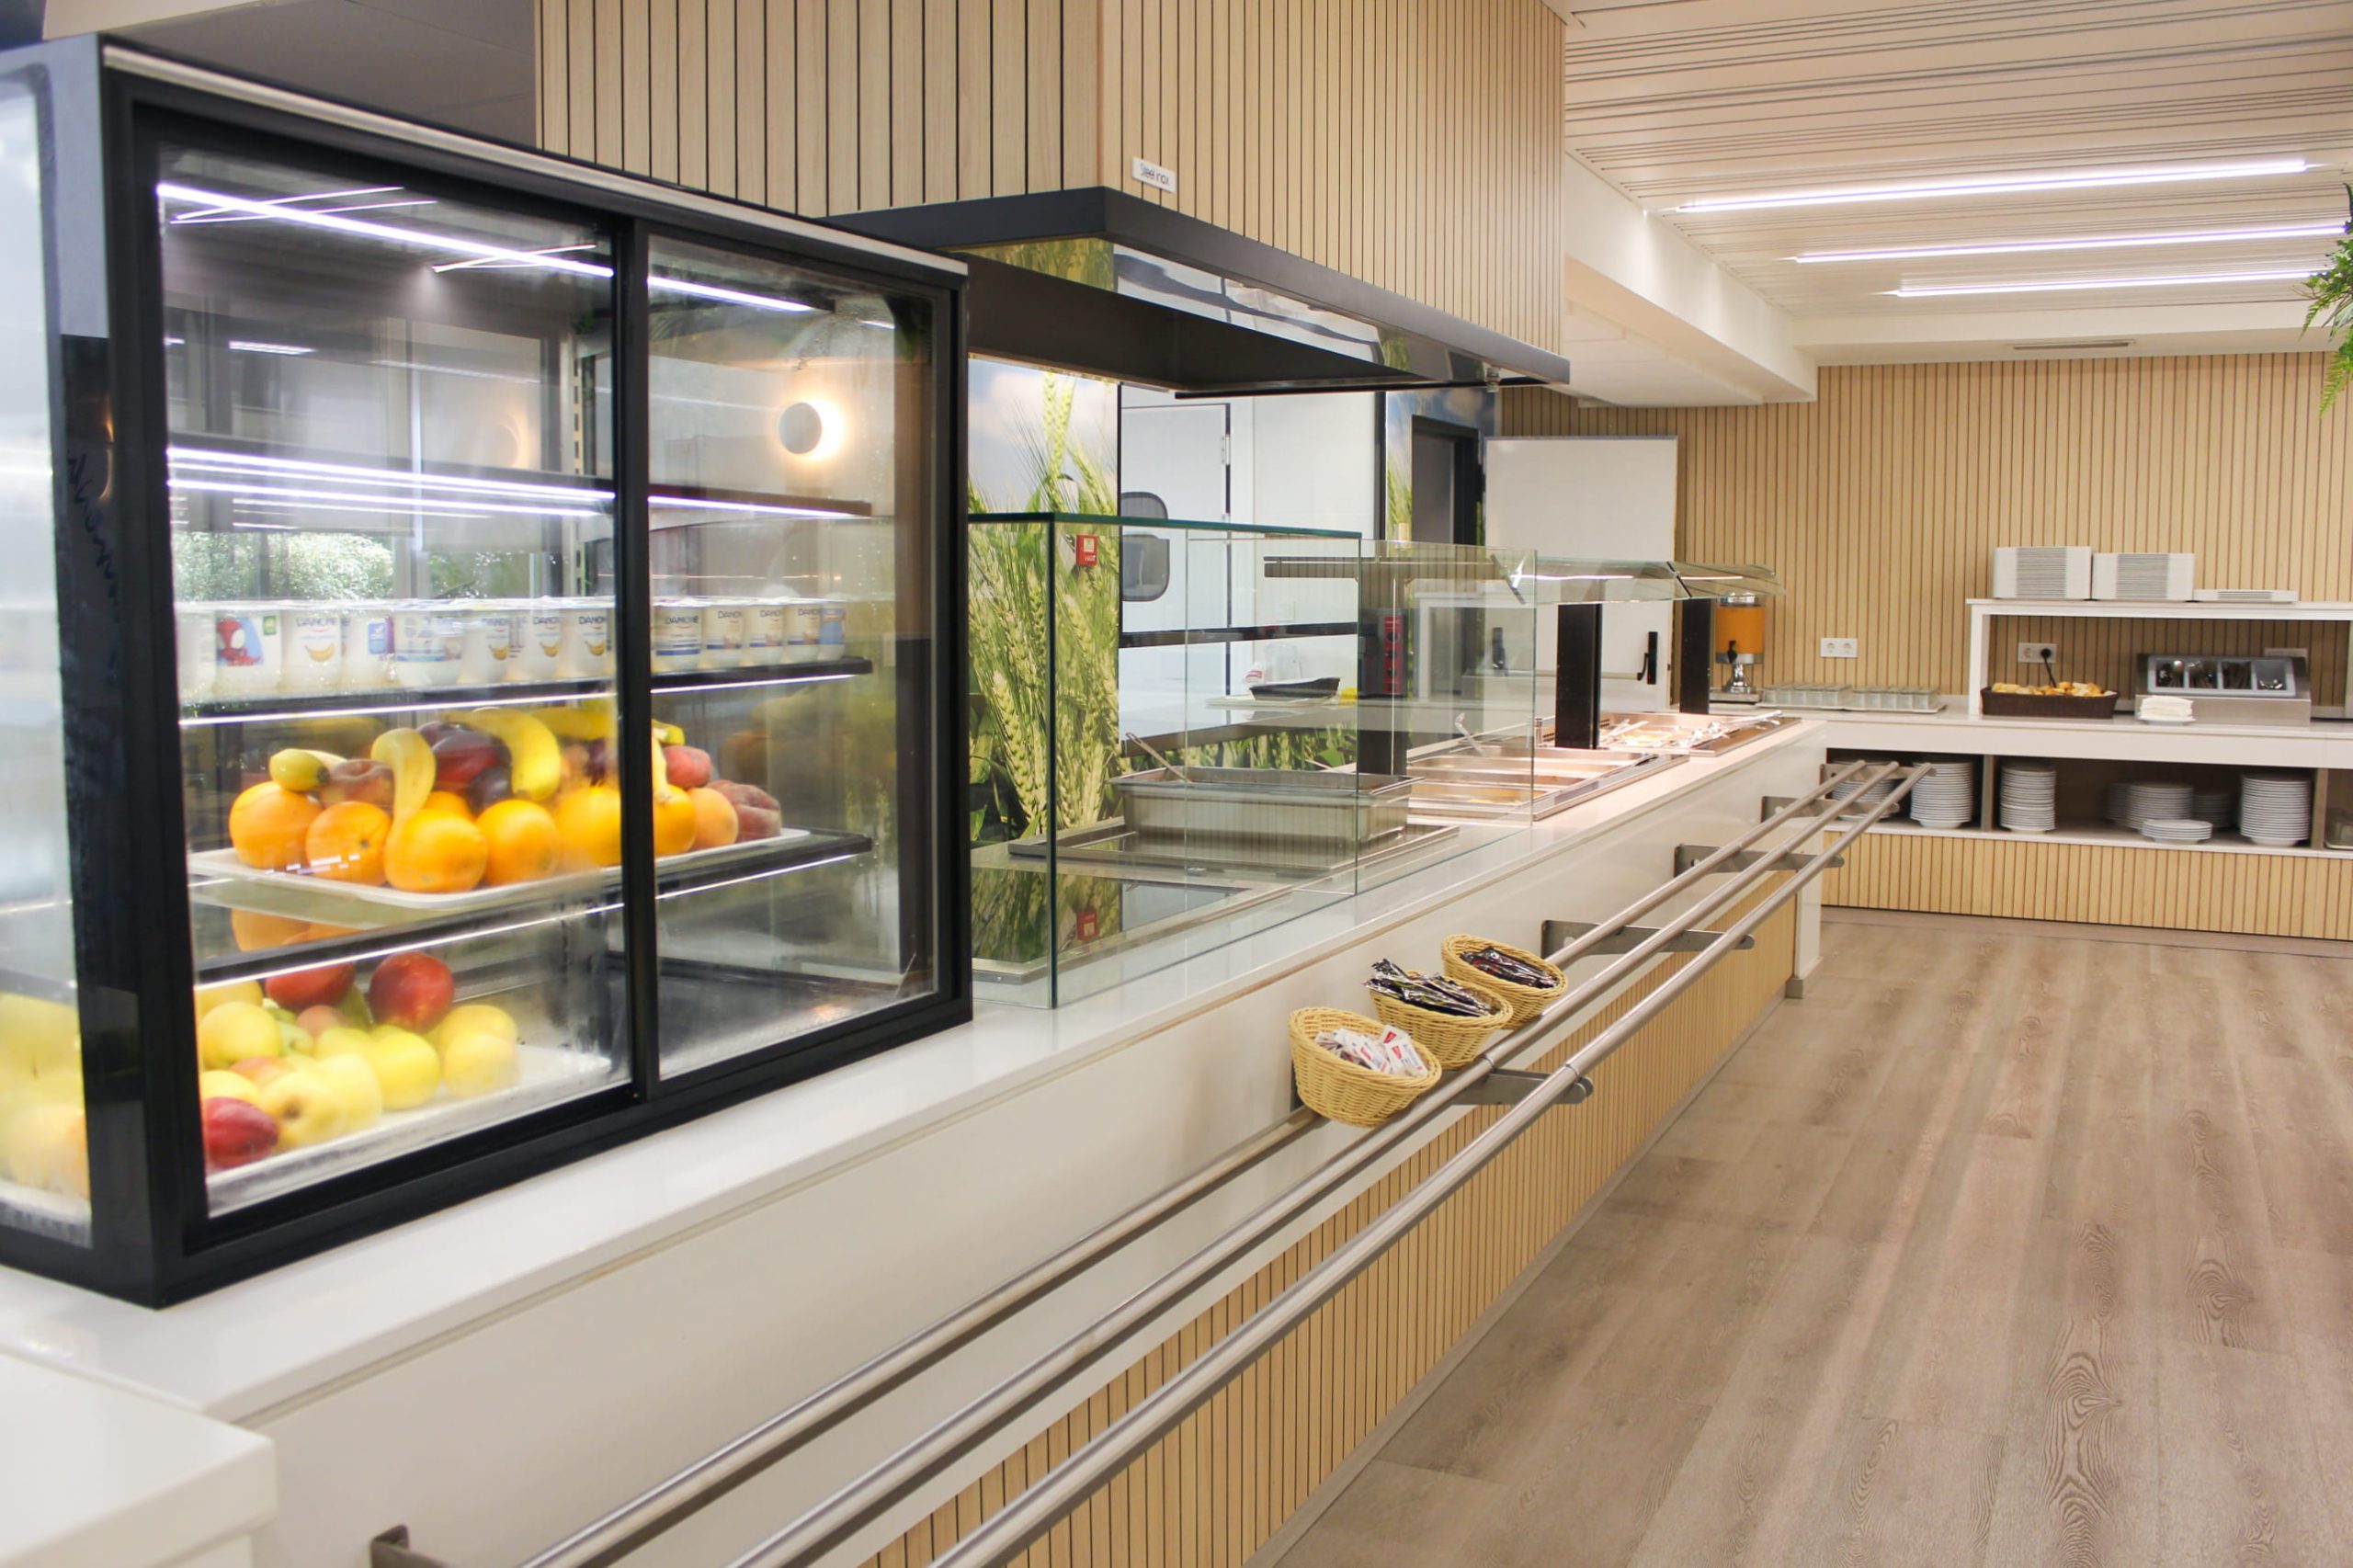 Improvements to canteen facilities at Lope de Vega School